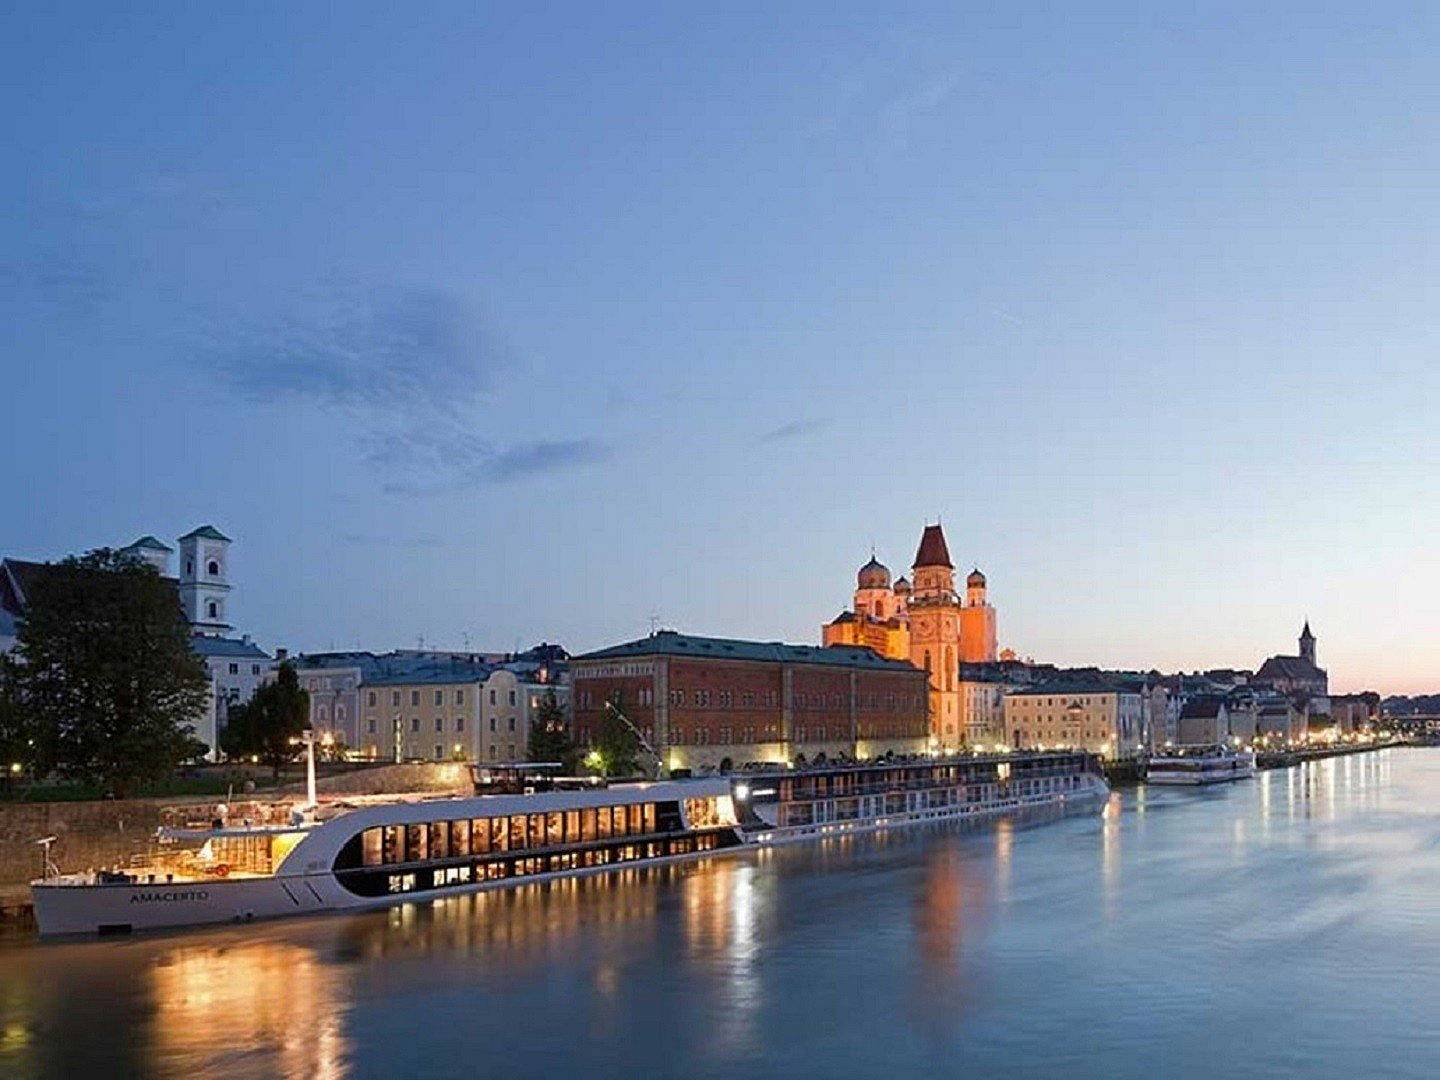 Le long du Danube à vélo, de Passau à Vienne